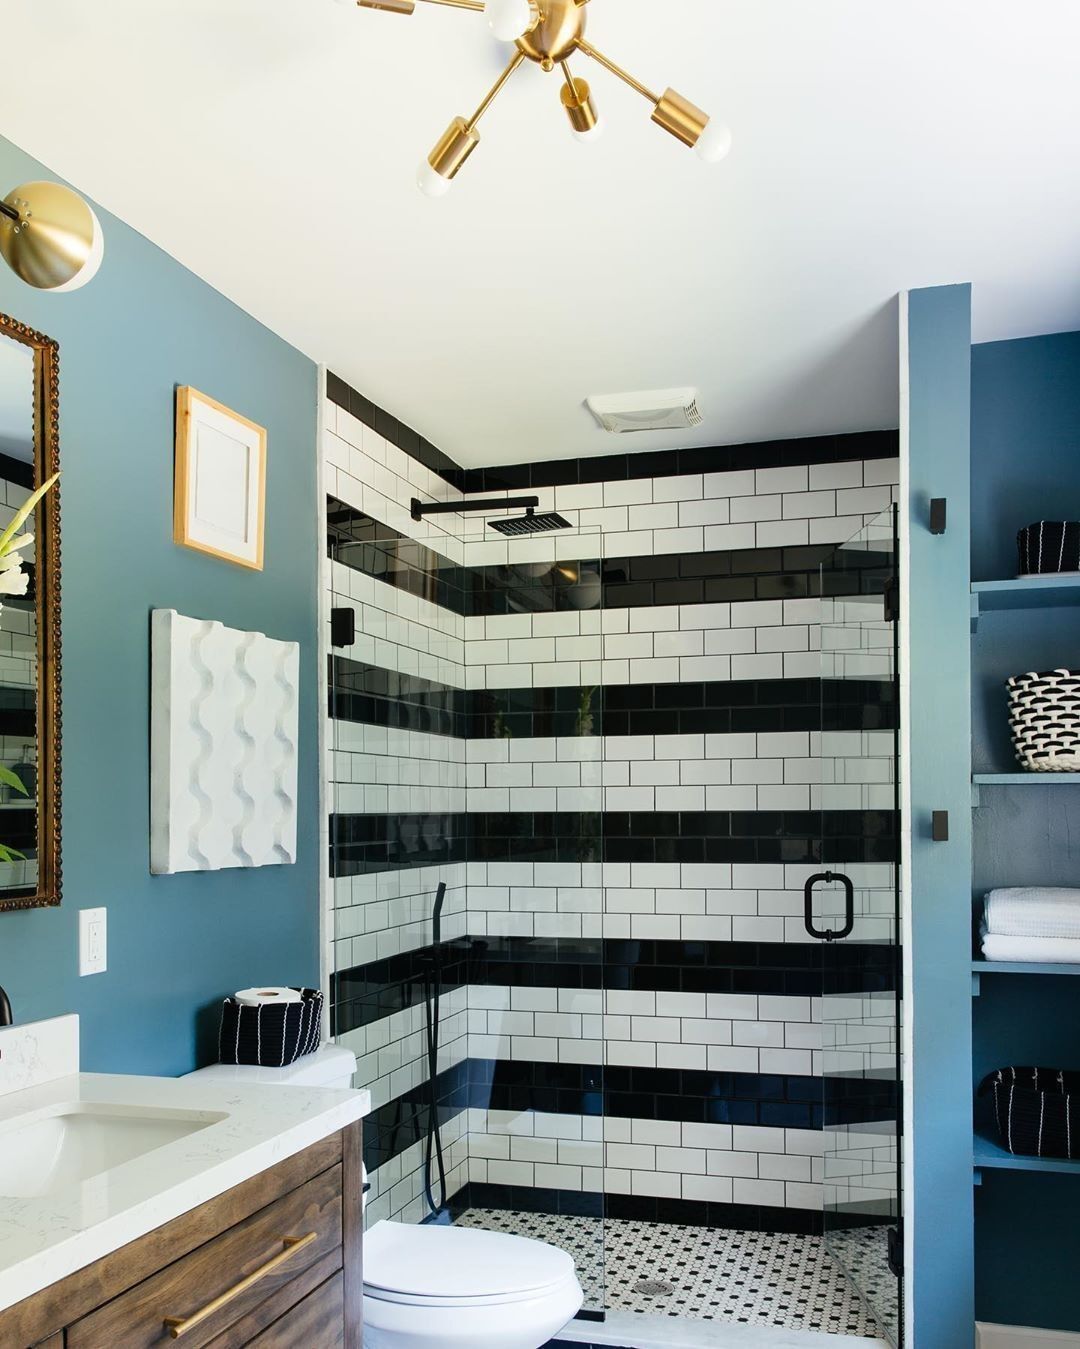 Banheiro com paredes azuis. Na parte do chuveiro, tem azulejos pretos e brancos